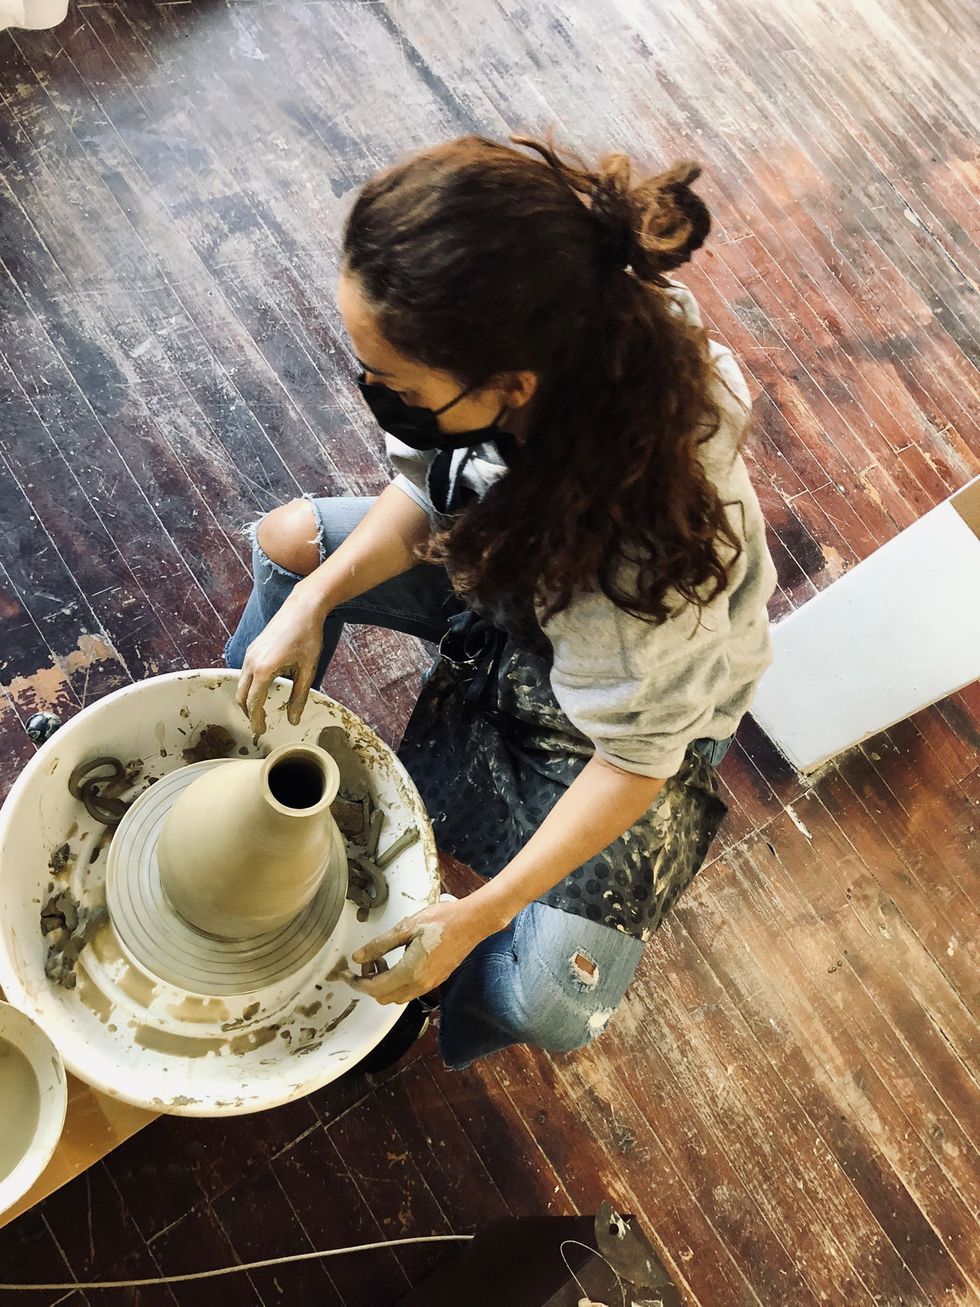 marta muñoz calero en su taller de cerámica trabajando la cerámica con el torno